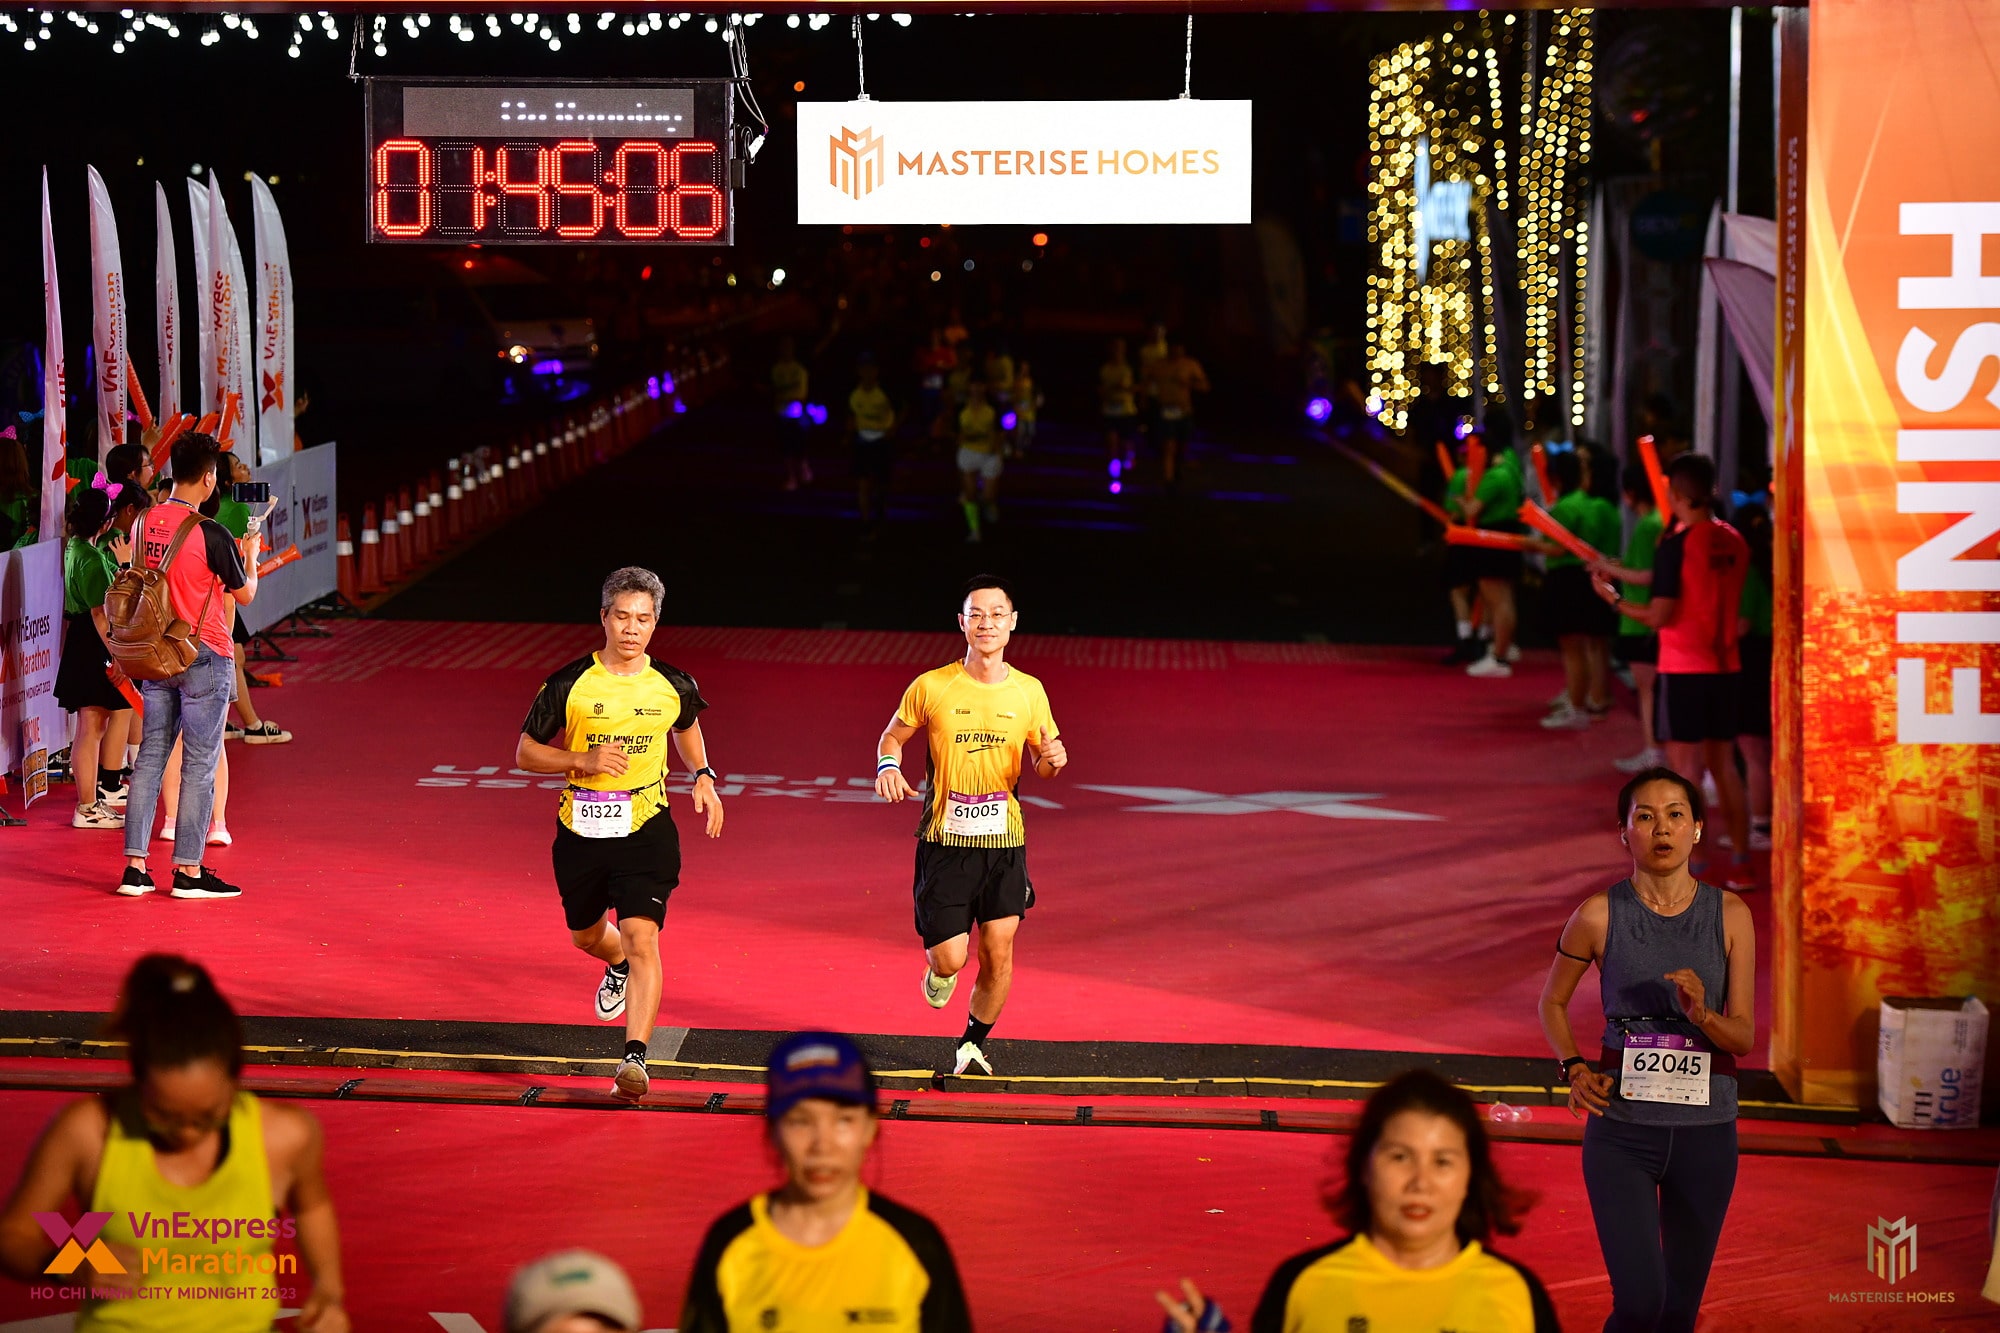 拥有超过 10,000 名运动员的 MASTERISE Homes 在胡志明市完成了第一场夜跑